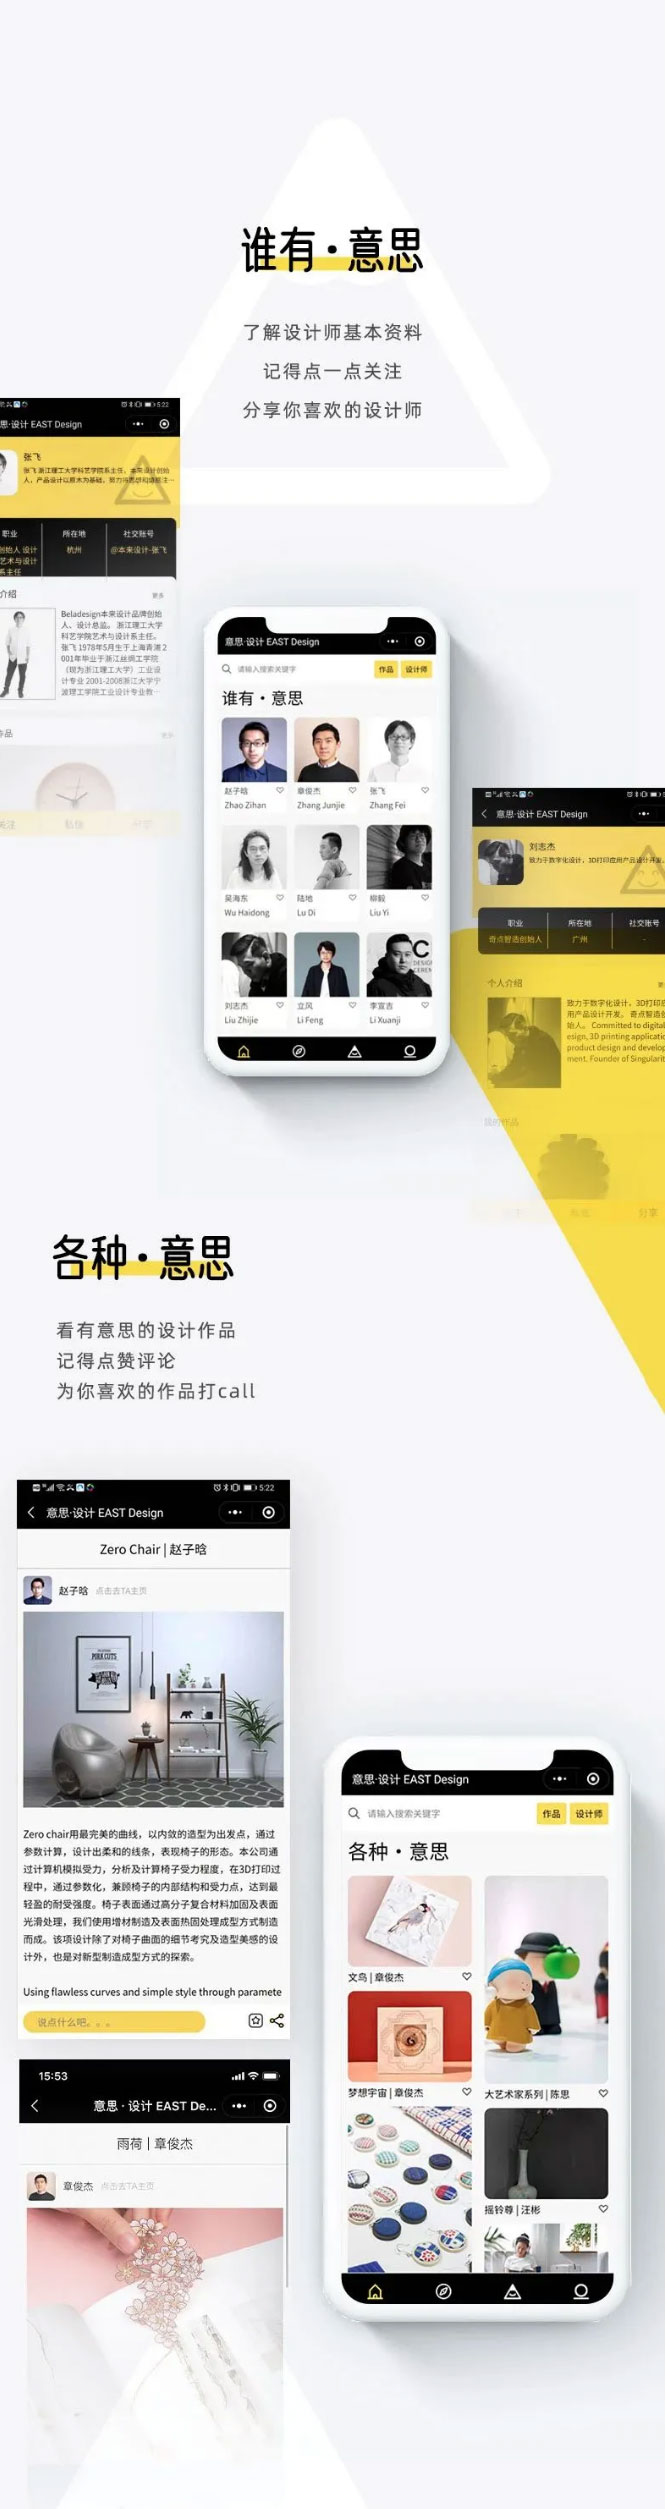 CIFF上海虹桥丨意思设计小程序首发上线，邂逅令人怦然心动的好设计！_03.jpg